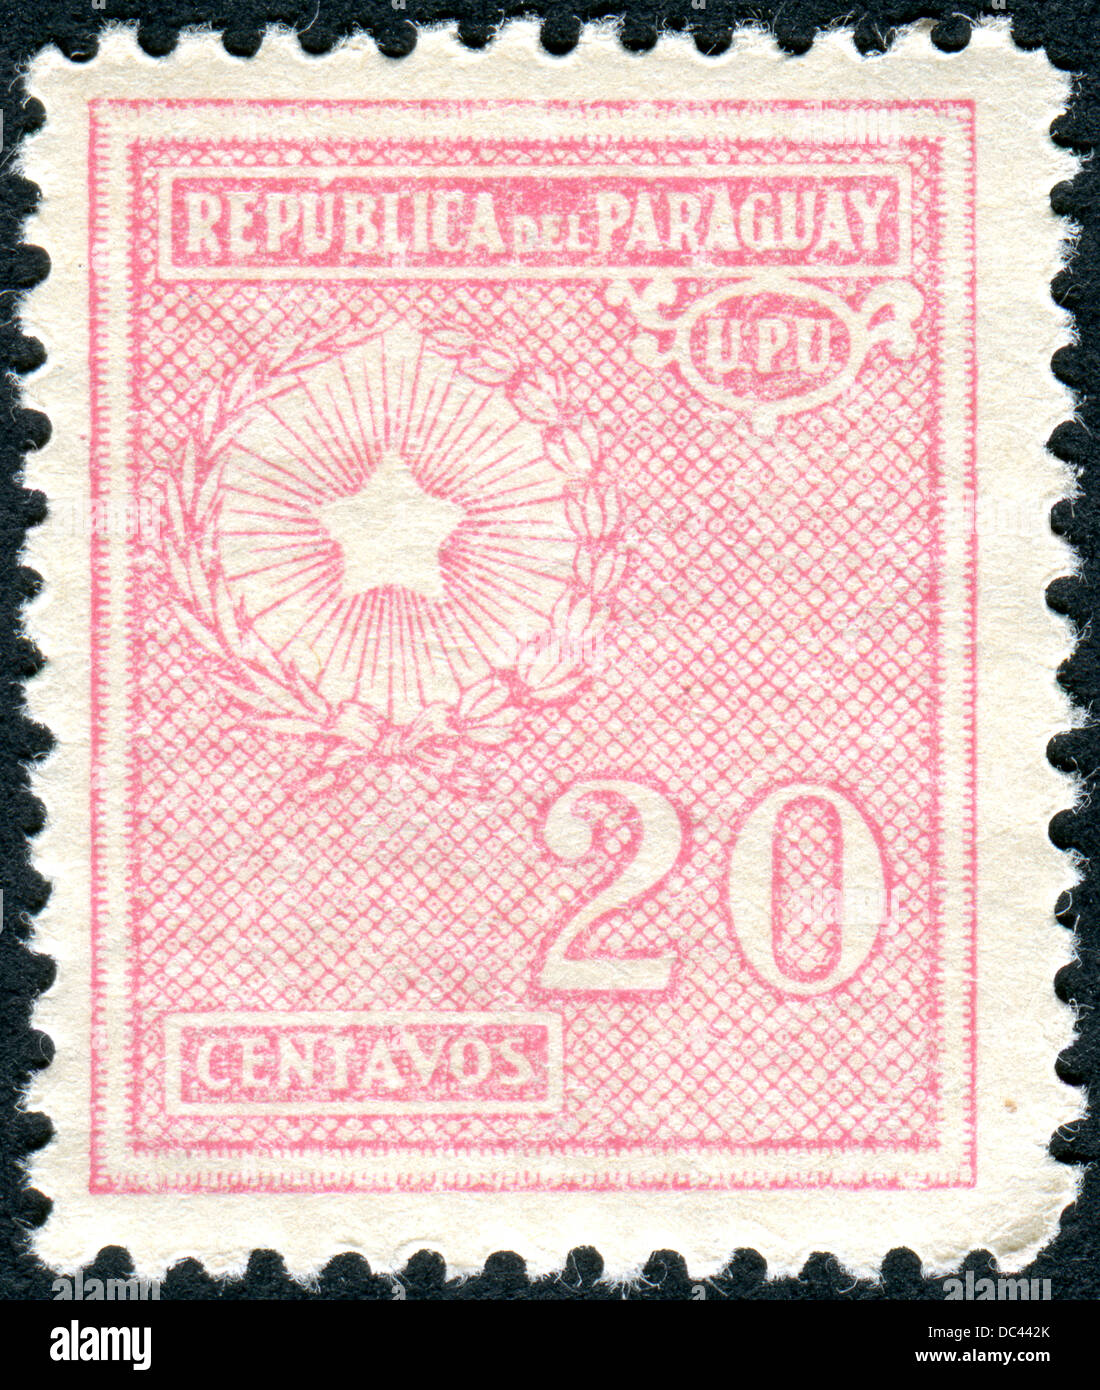 PARAGUAY - circa 1935 : timbre-poste imprimé en Paraguay montre les armoiries, circa 1935 Banque D'Images